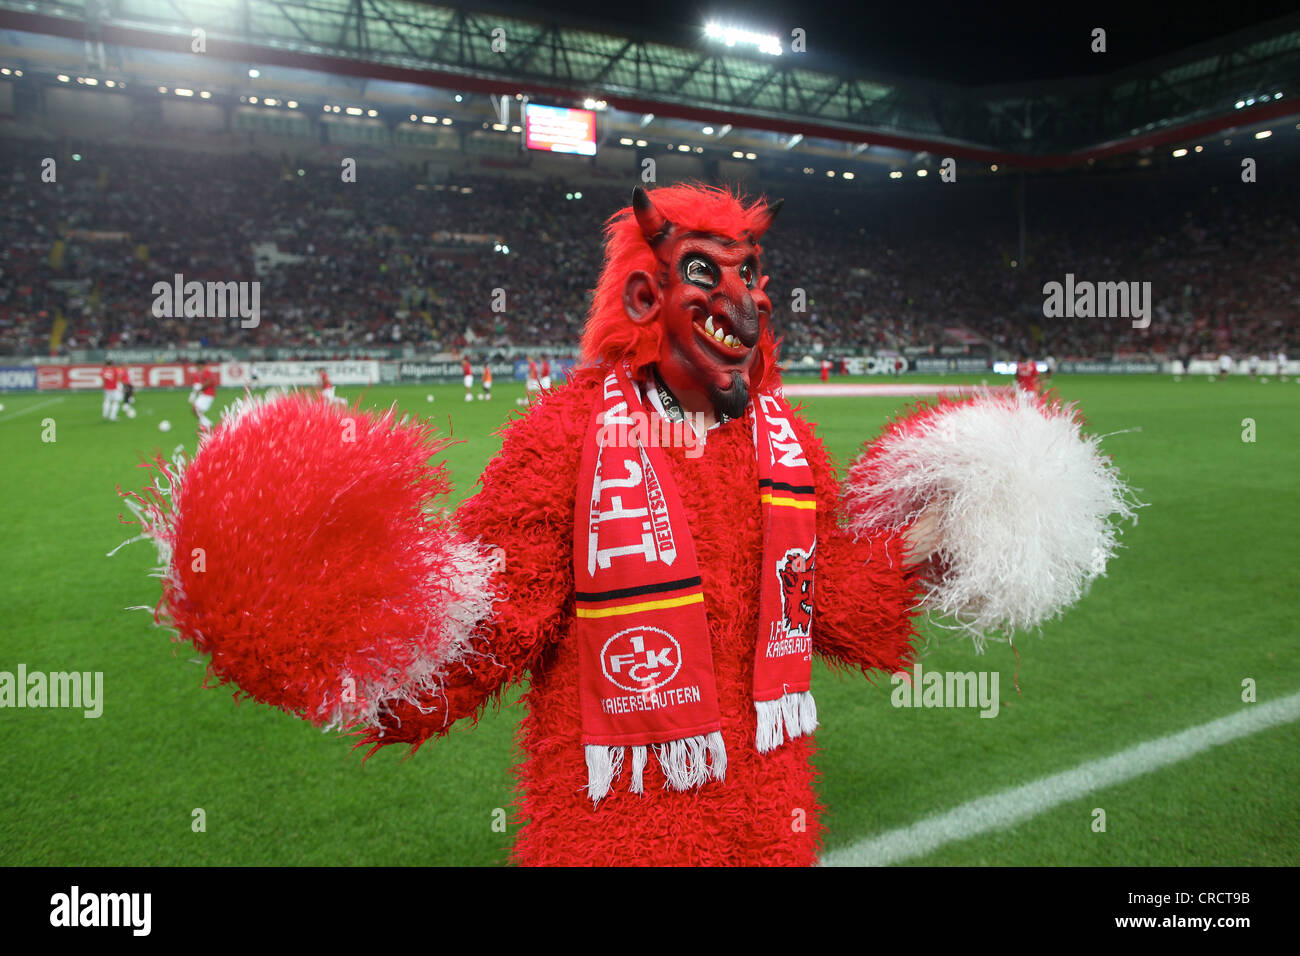 Le diable rouge, mascotte du club de football de la Bundesliga 1. FC Kaiserslautern, Kaiserslautern, Rhénanie-Palatinat Banque D'Images